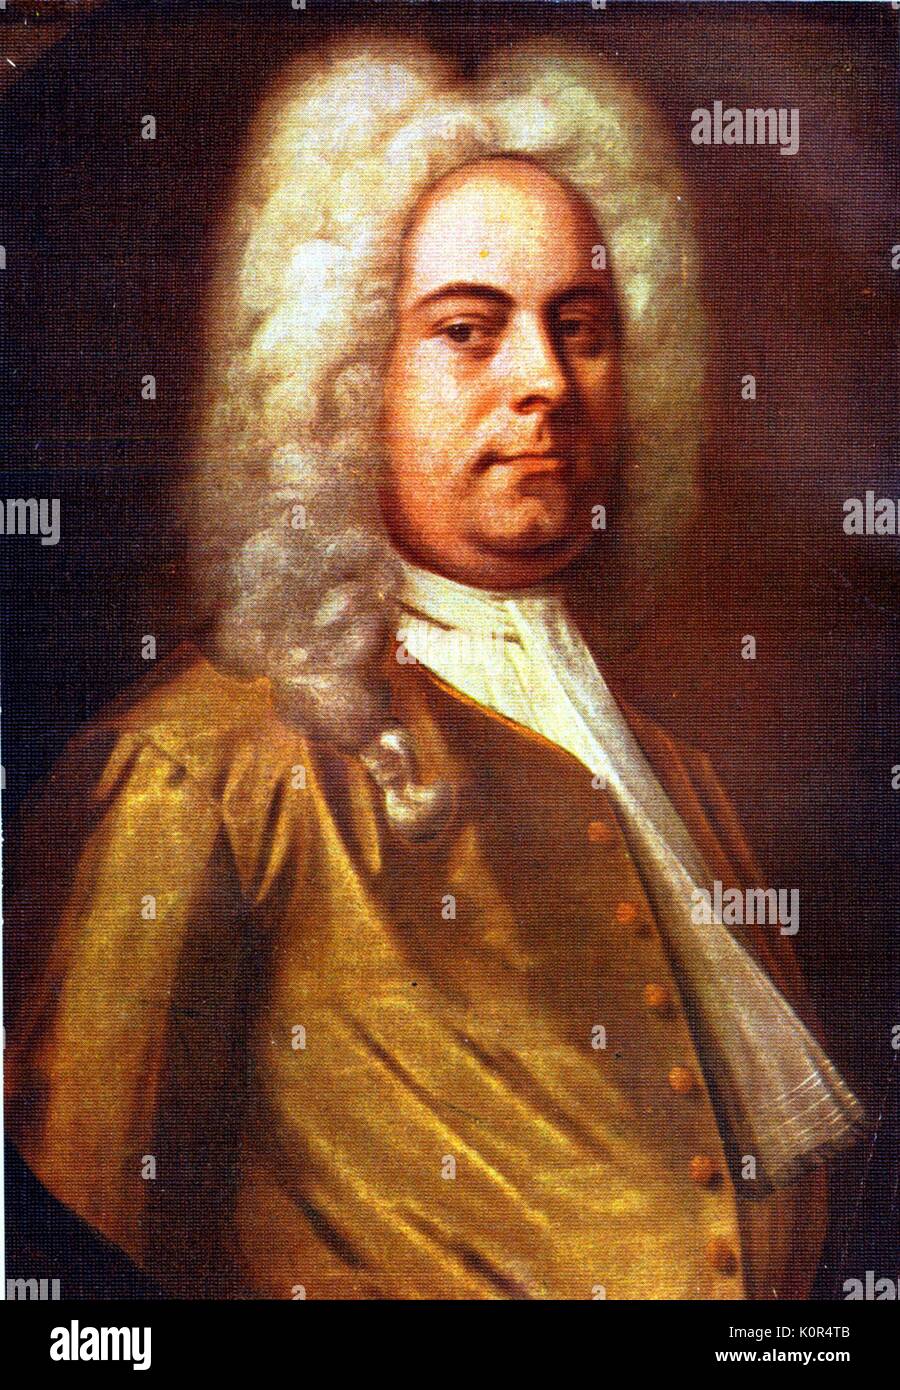 George Frideric Handel, portrait d'après une peinture par Balthasar Denner. Compositeur allemand, 23 février 1685 - 14 avril 1759. Banque D'Images